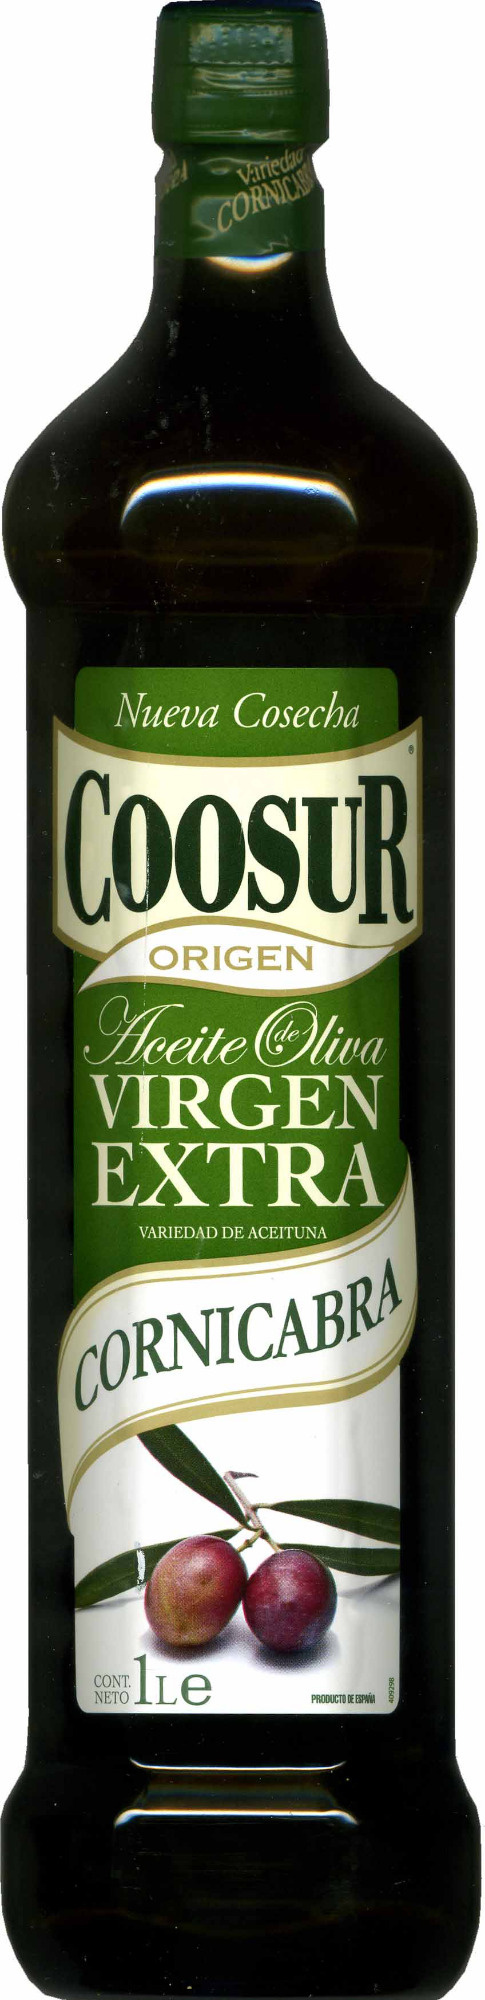 Aceite de oliva virgen extra Variedad Cornicabra - Producto